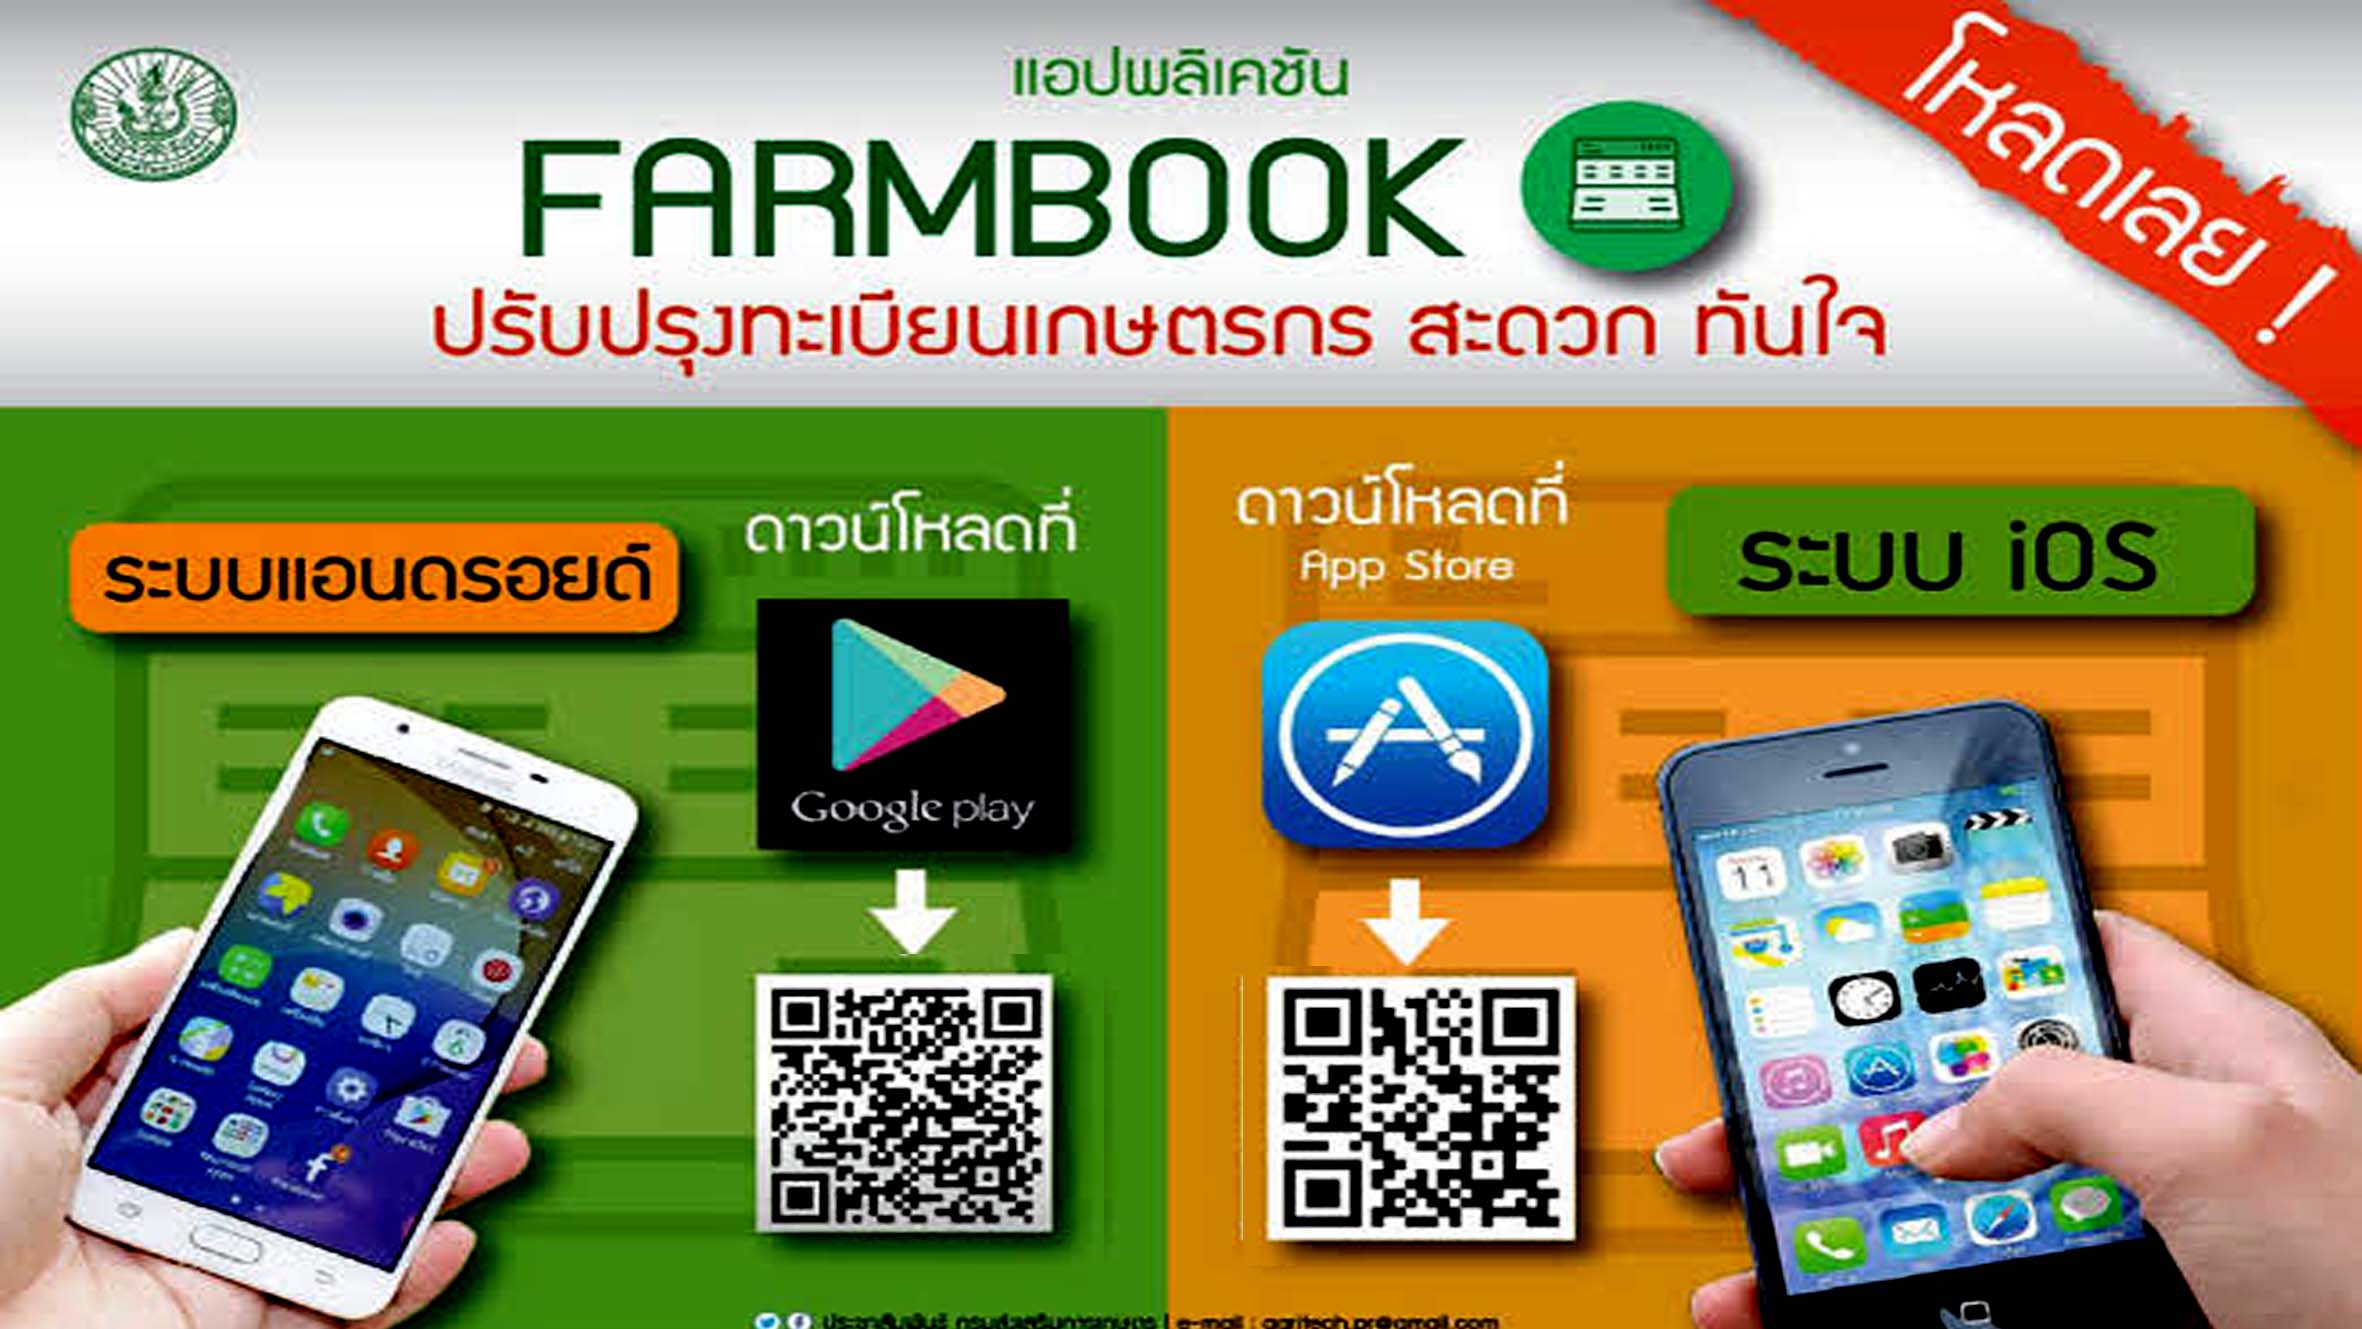 โหลดเลย !! แอปพลิเคชัน Farmbook เพื่อไว้ตรวจสอบข้อมูลการลงทะเบียนเกษตรกร ในการรับเงินช่วยเหลือ 15000 บาท